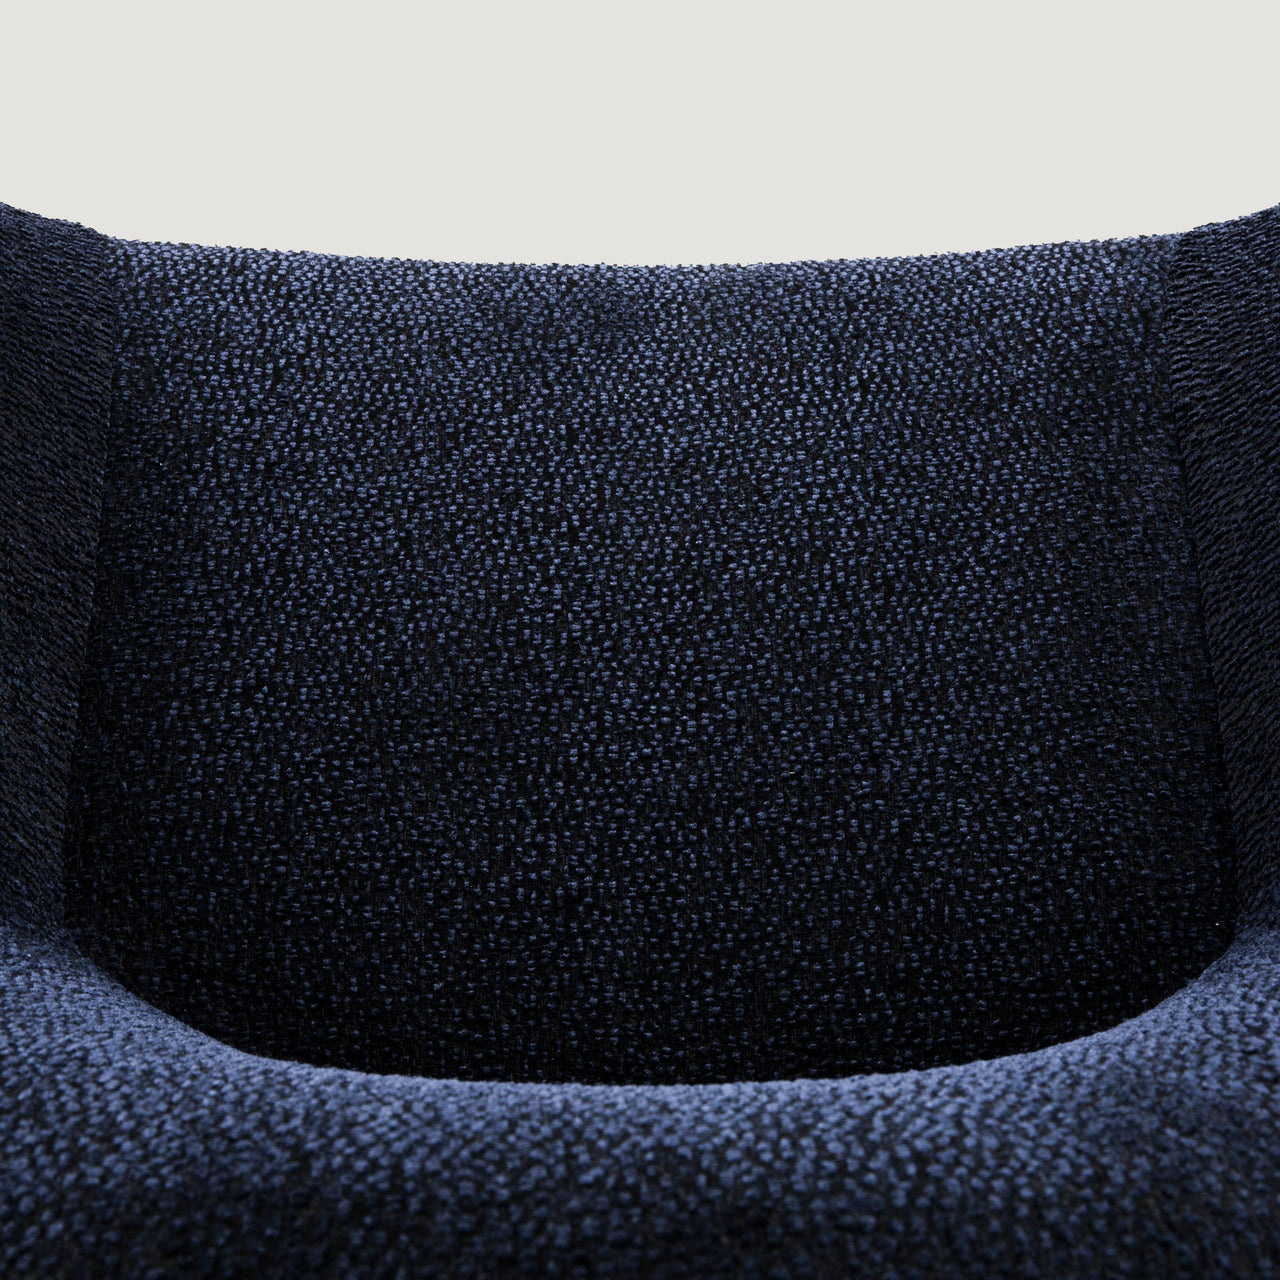 Hortensia Armchair: Upholstered